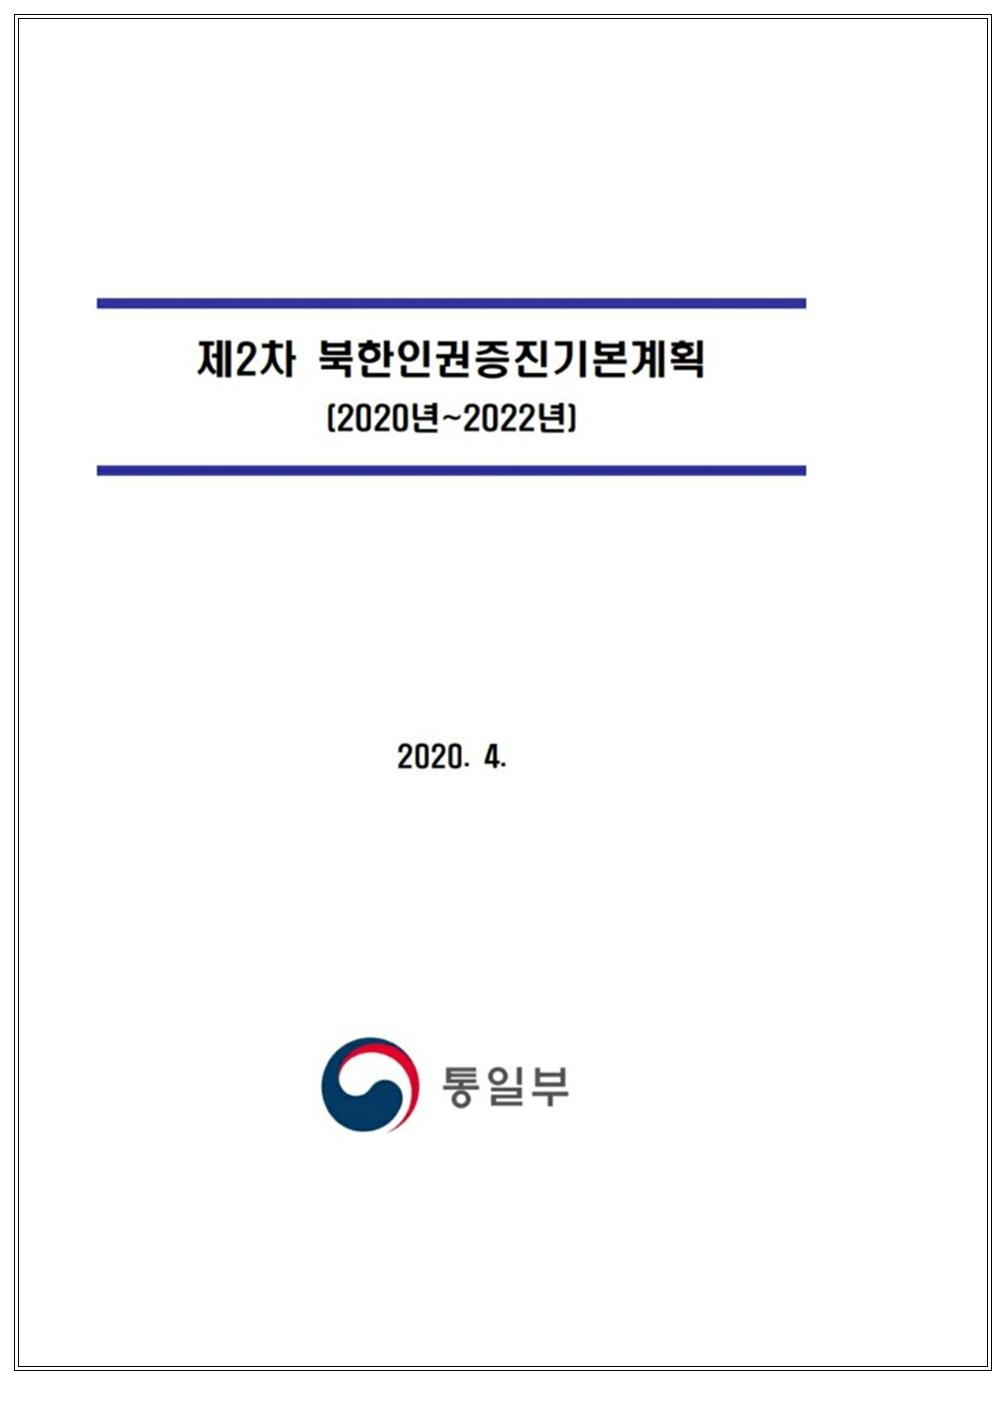 보도자료(북한인권증진계획)200427-2003.jpg